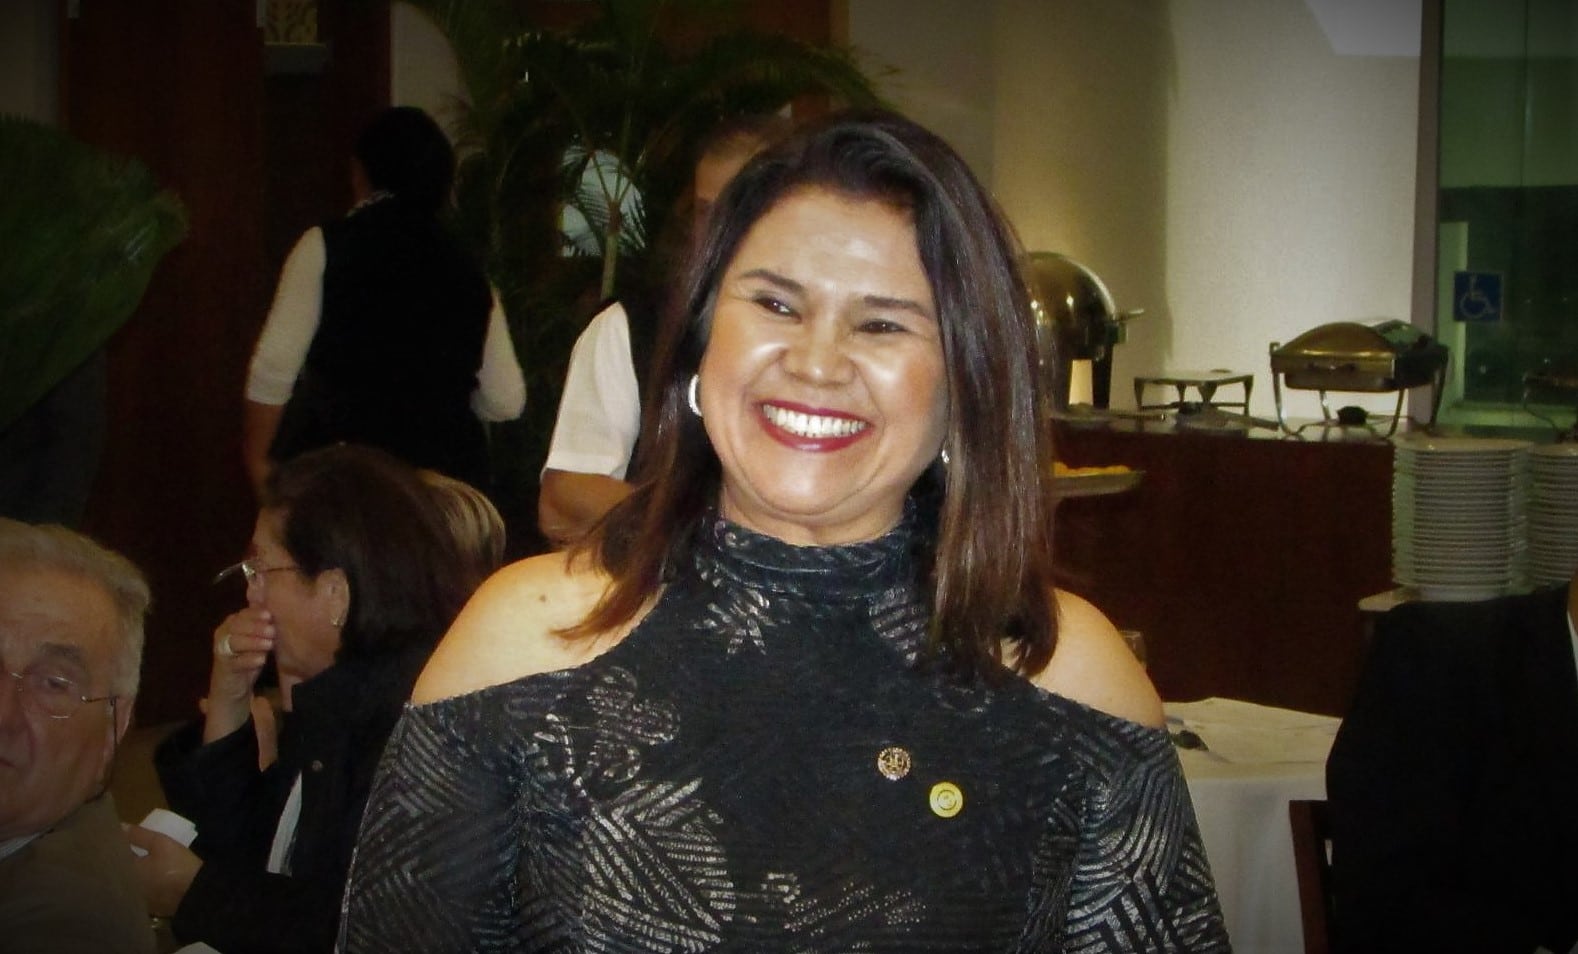  Marcia Mamede assume presidência do Rotary Club de Jundiaí Leste